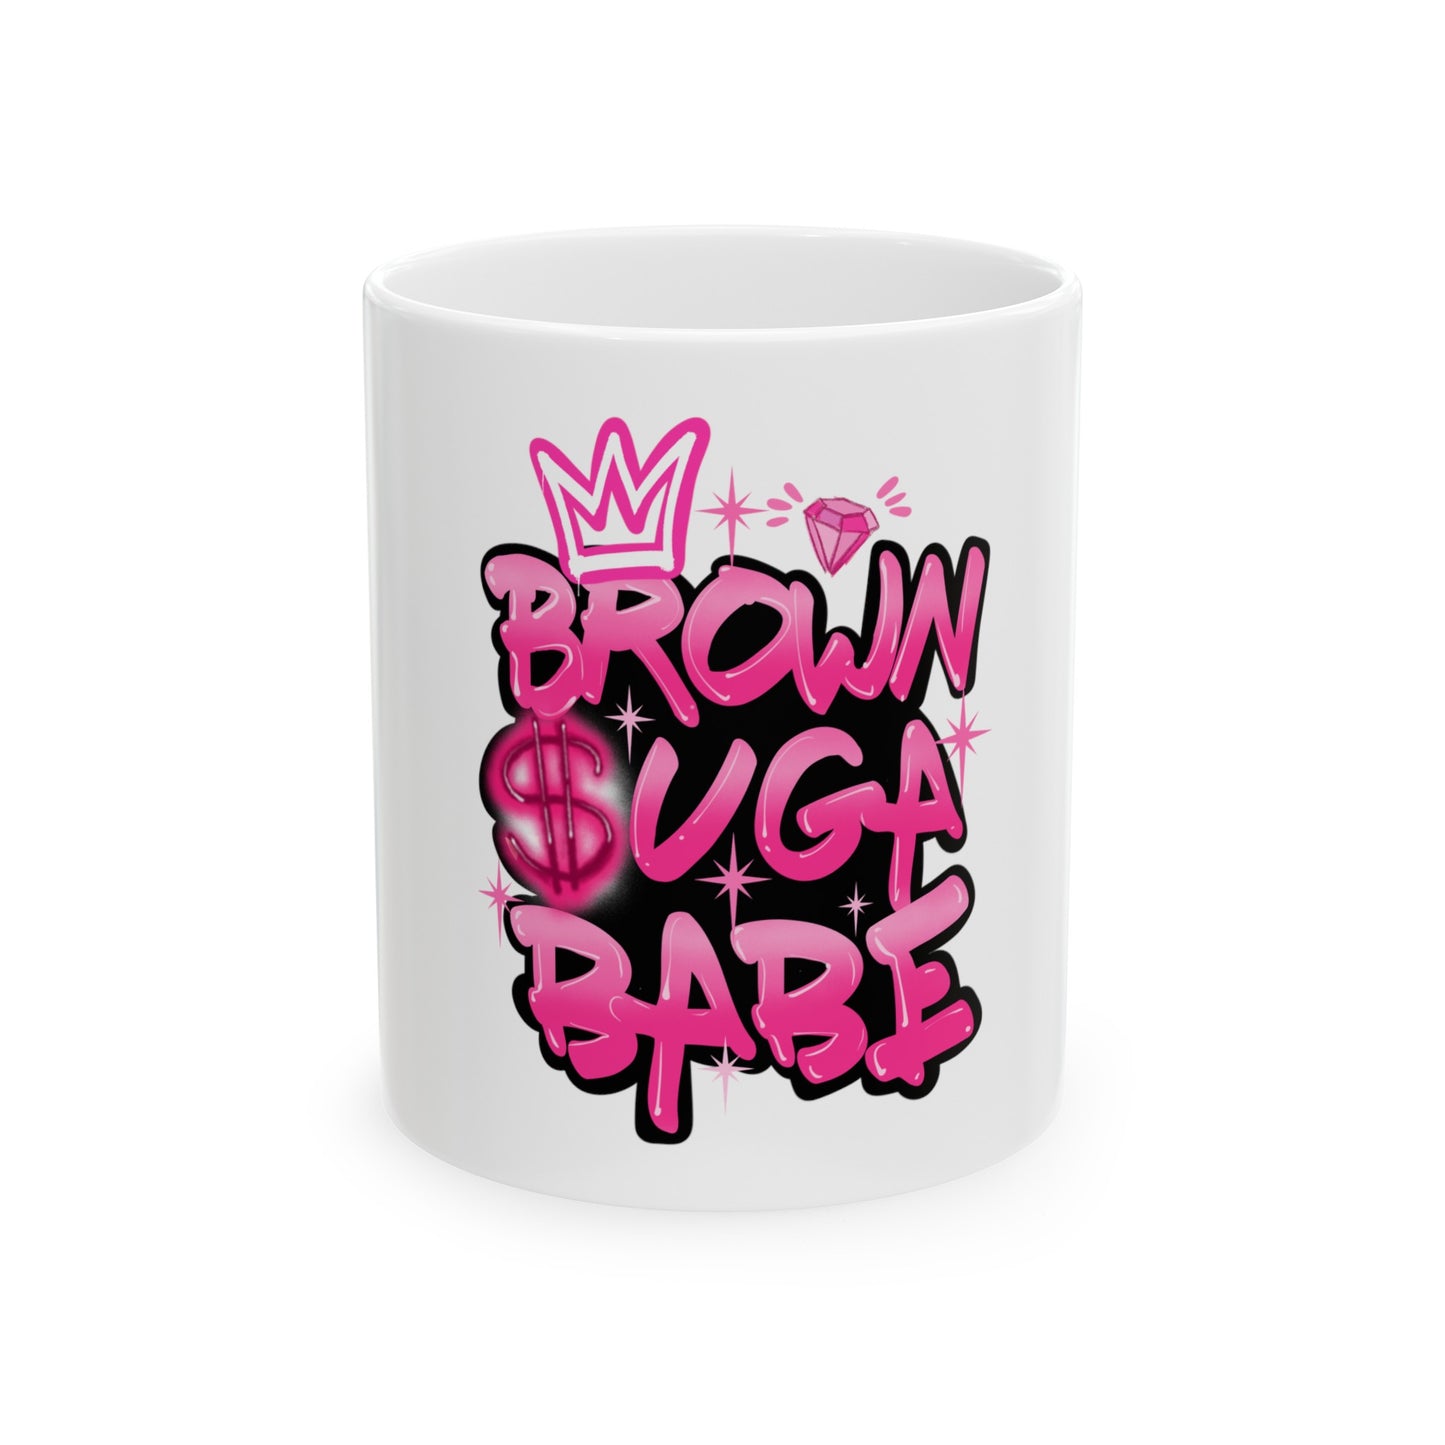 Brown Suga Babe (pink)Ceramic Mug, 11oz